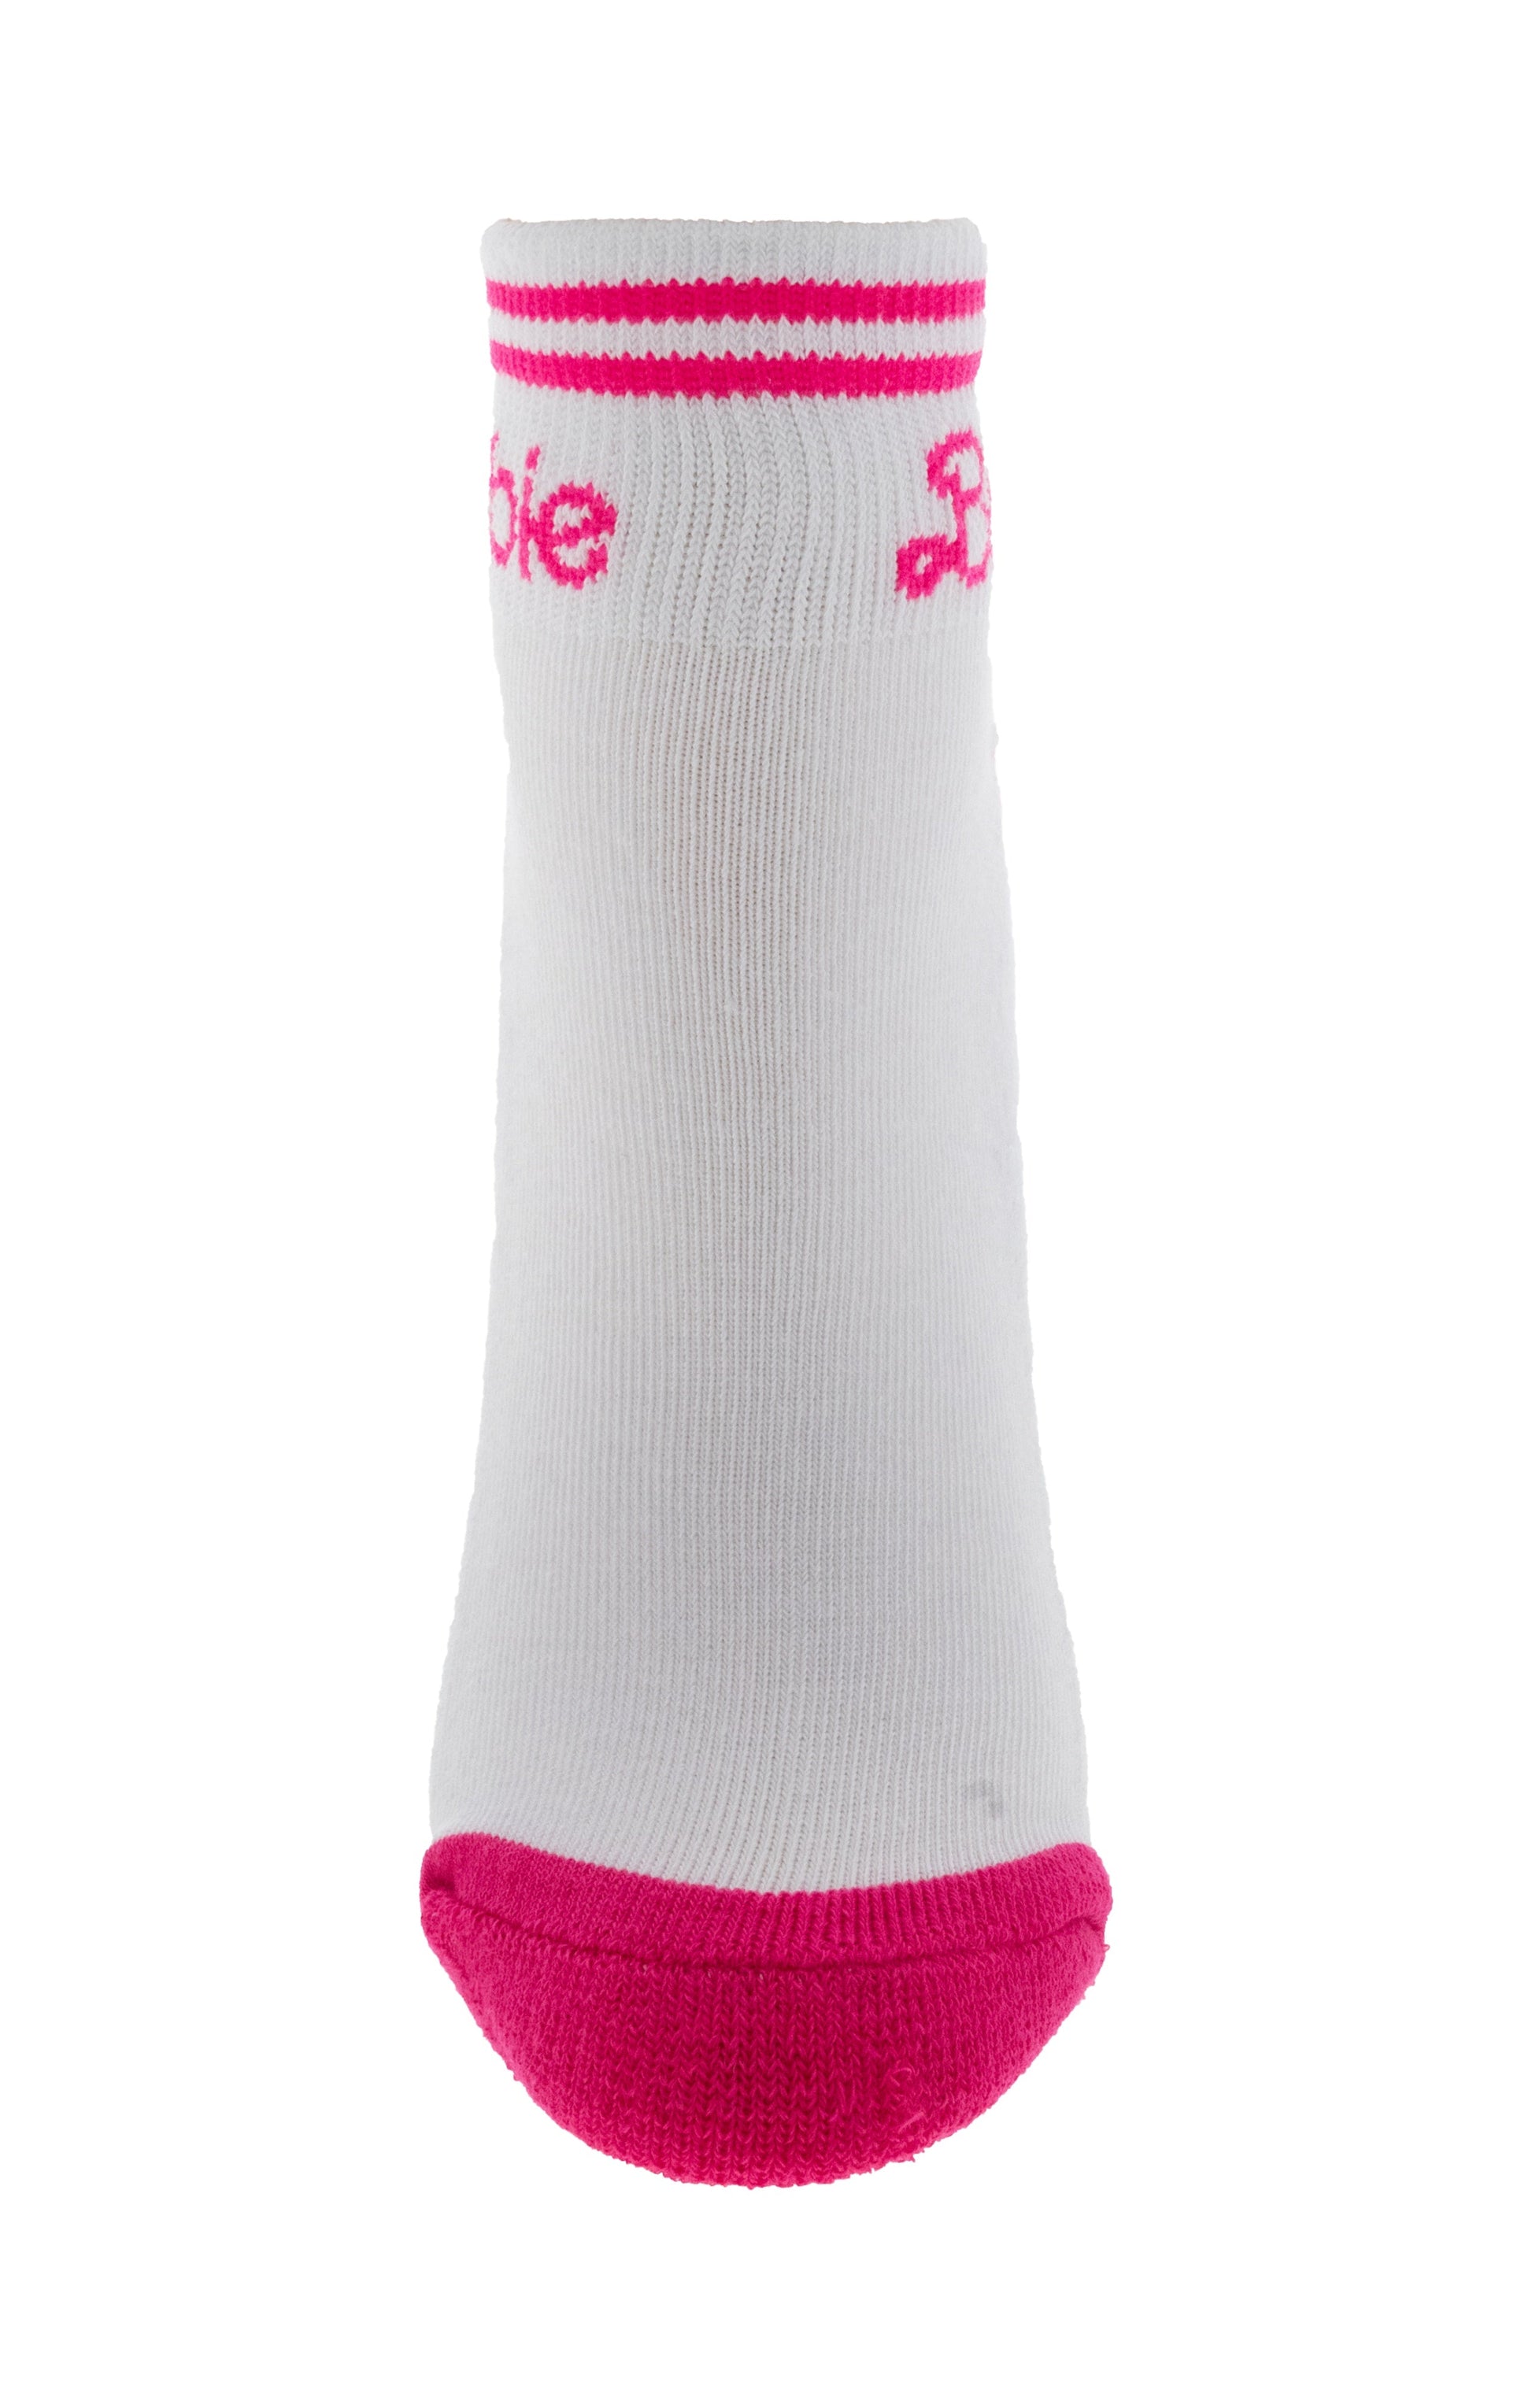 Gertex Barbie Ladies 2-Pack Half Terry Ankle Socks in White